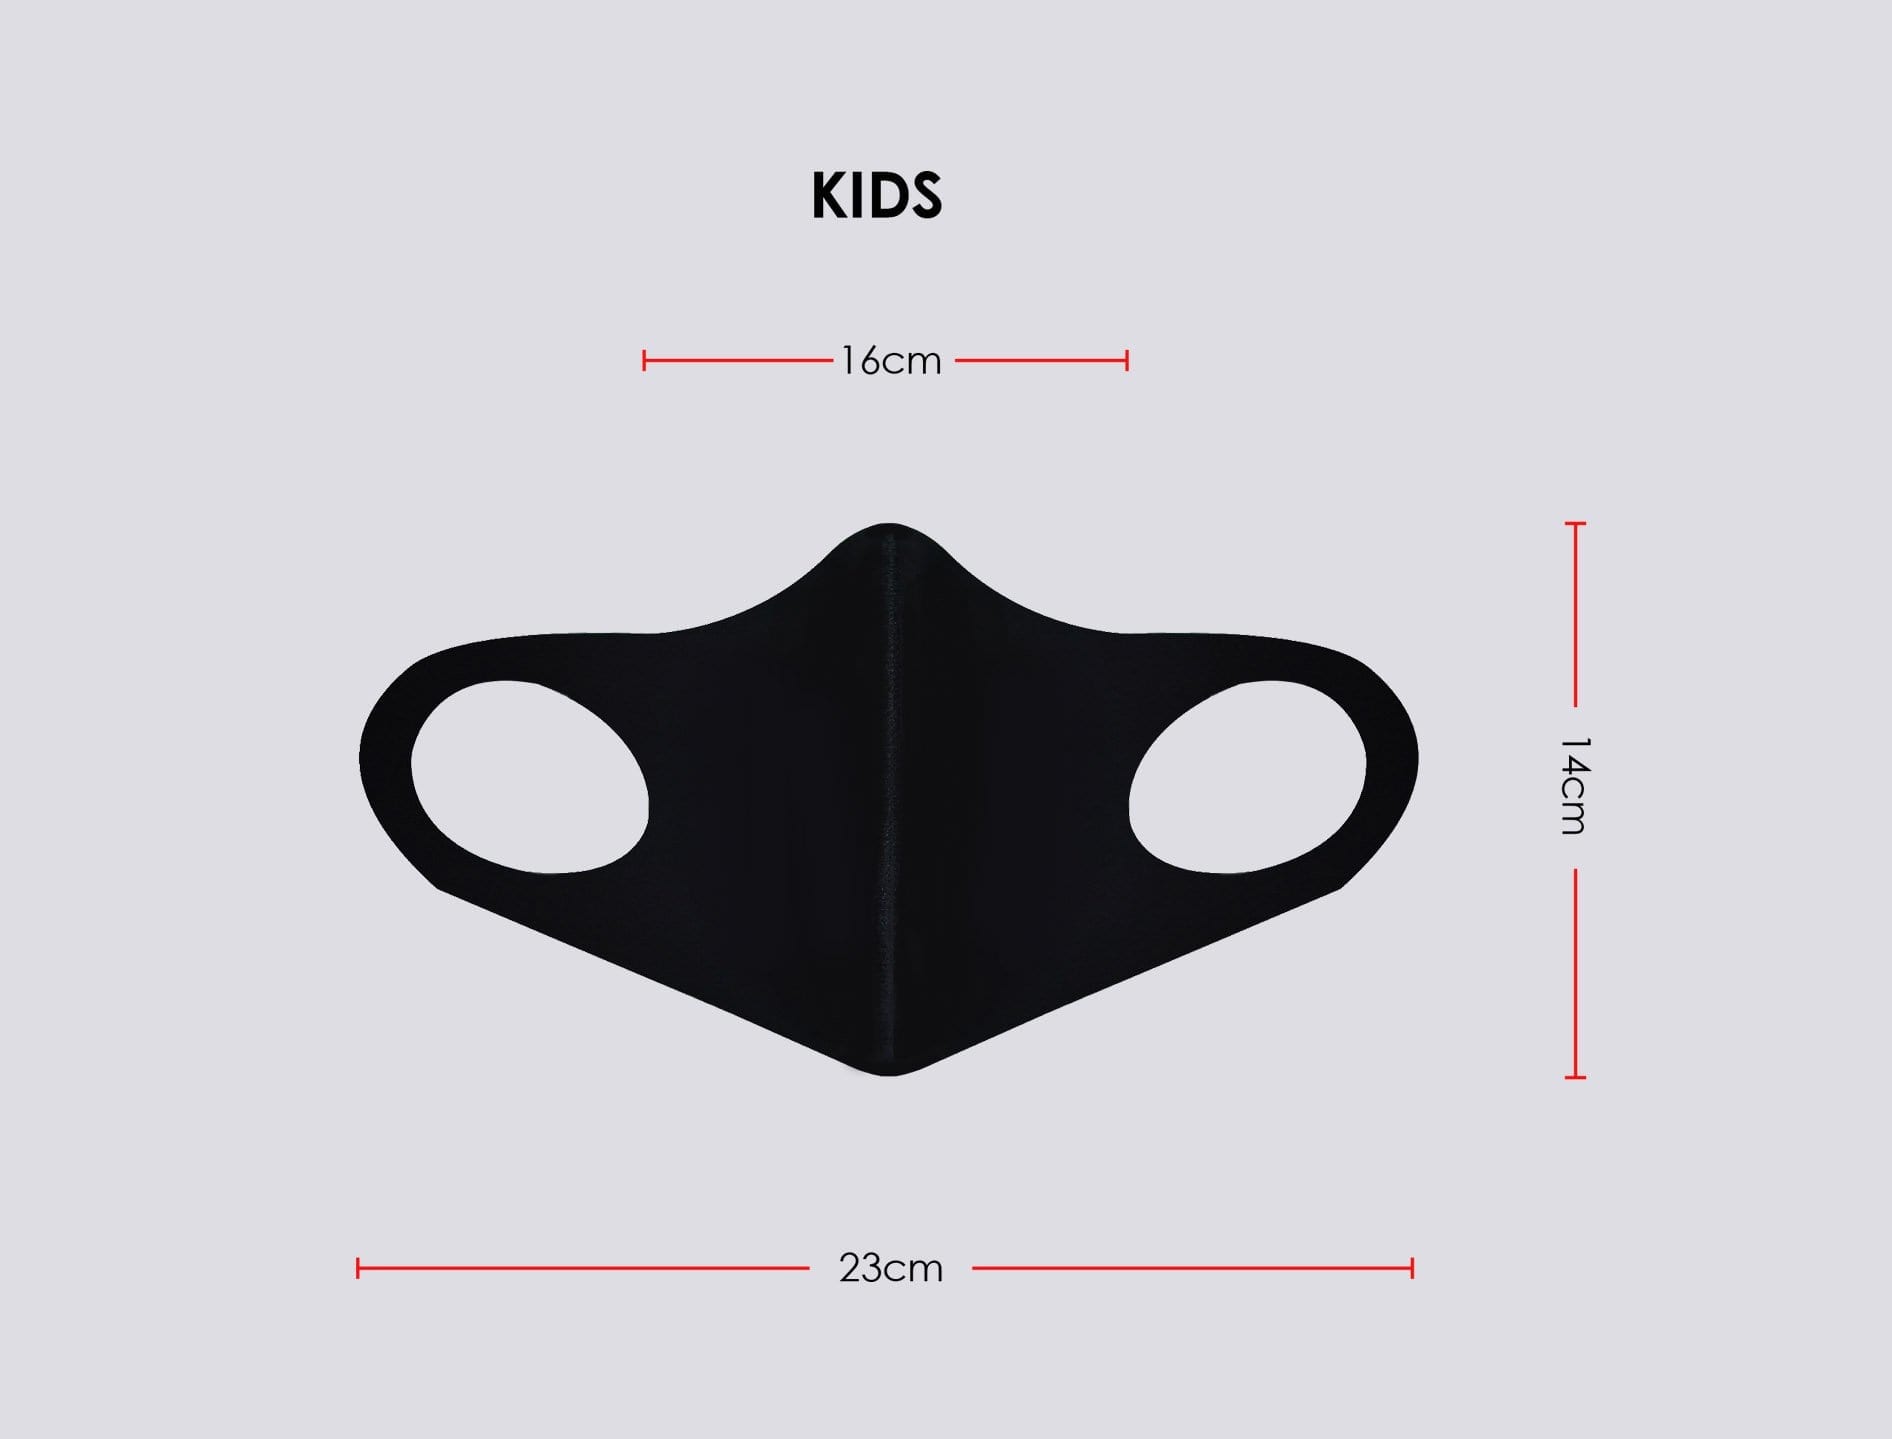 3D Mask Kids Size Measurement